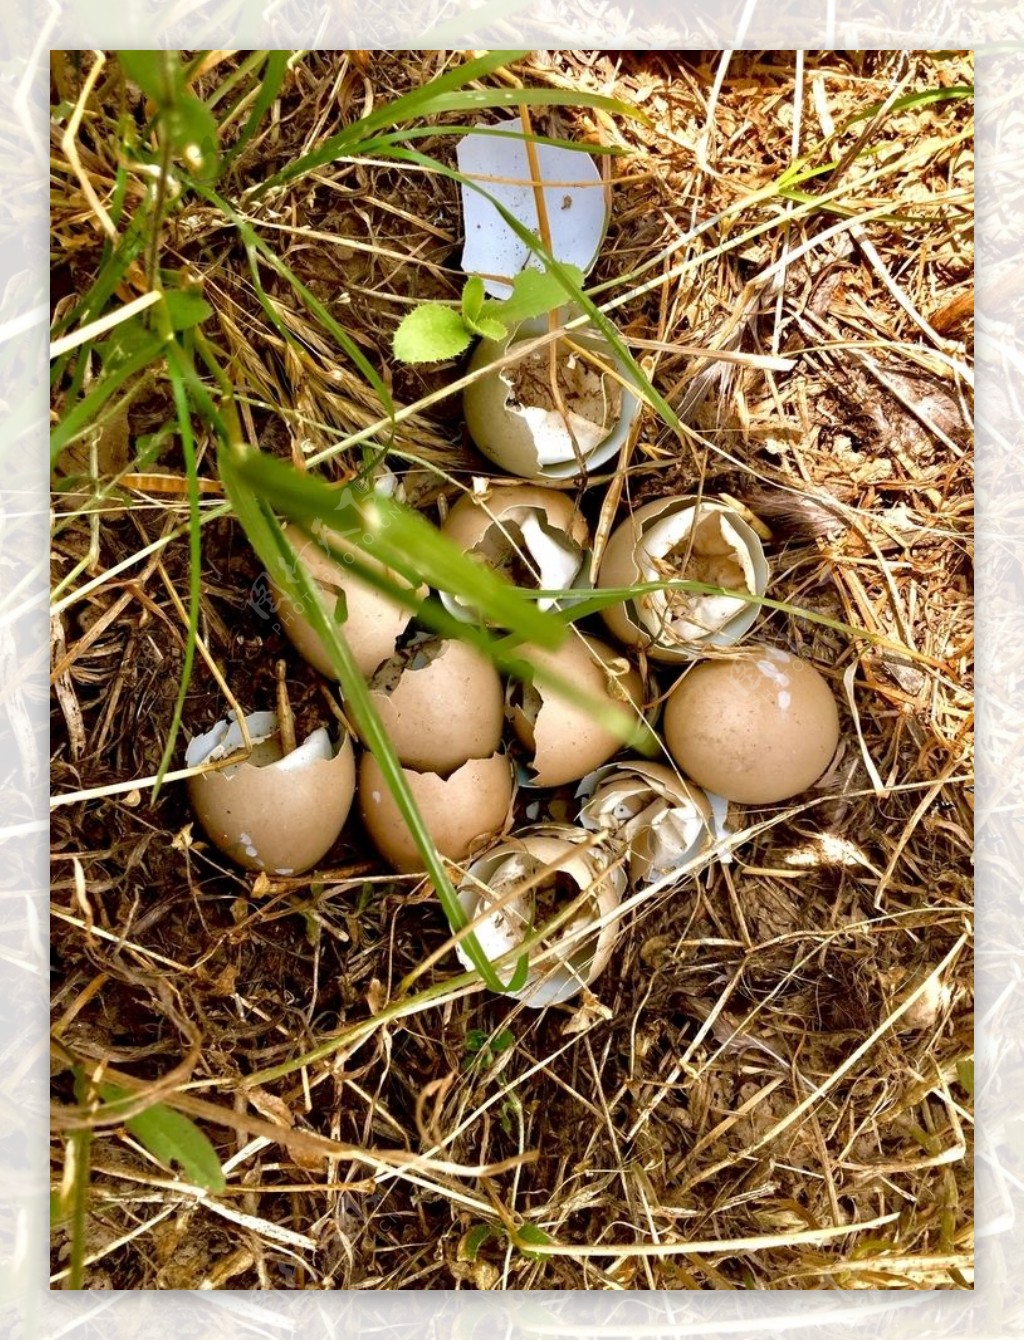 野外已经孵化的野鸡蛋